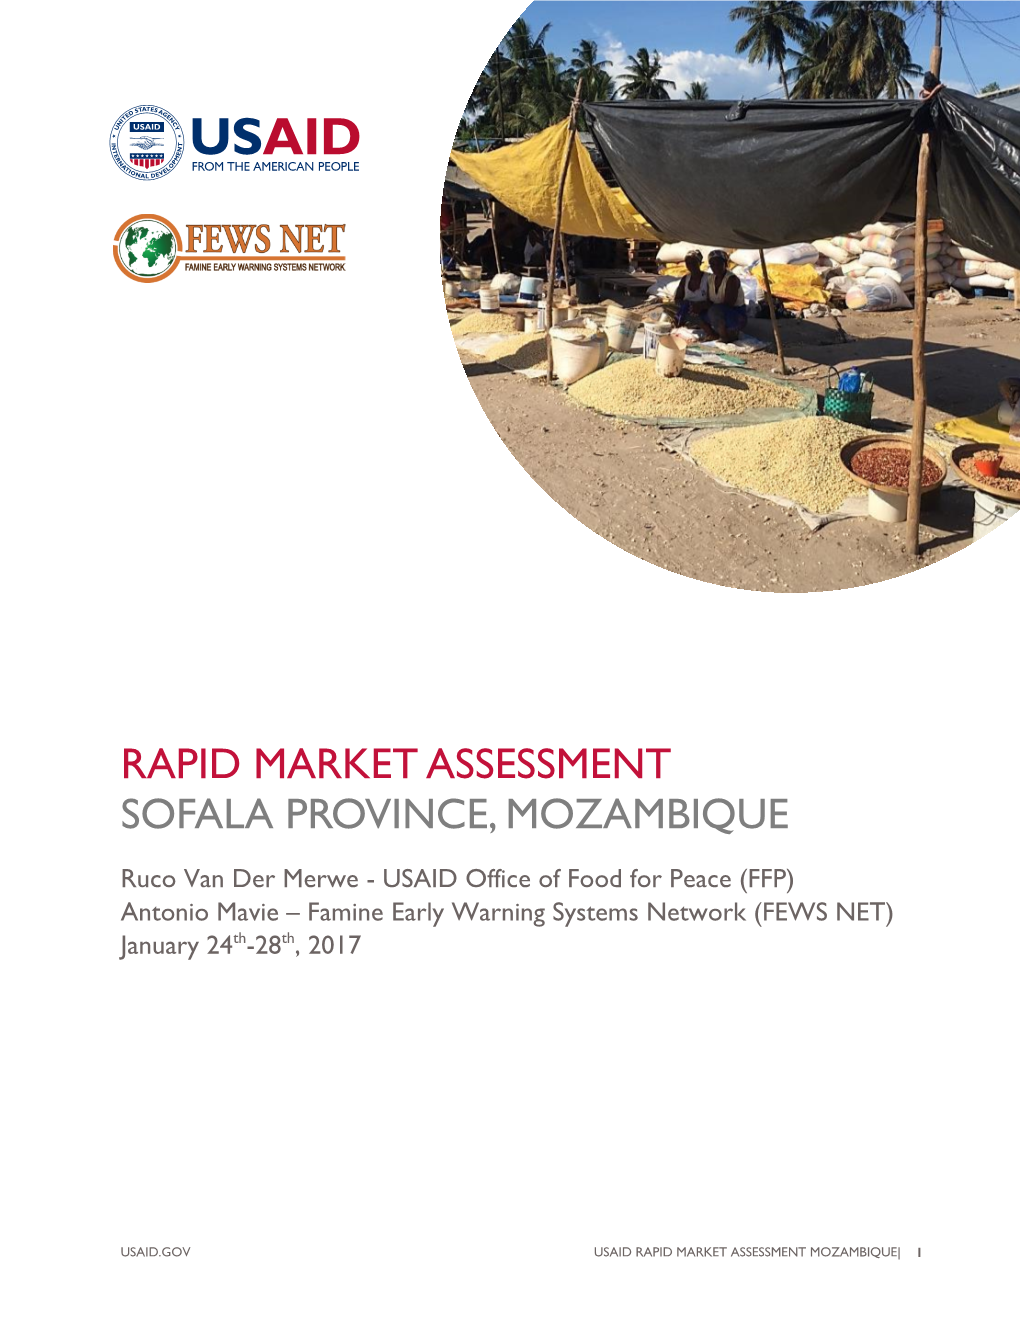 Rapid Market Assessment Sofala Province, Mozambique